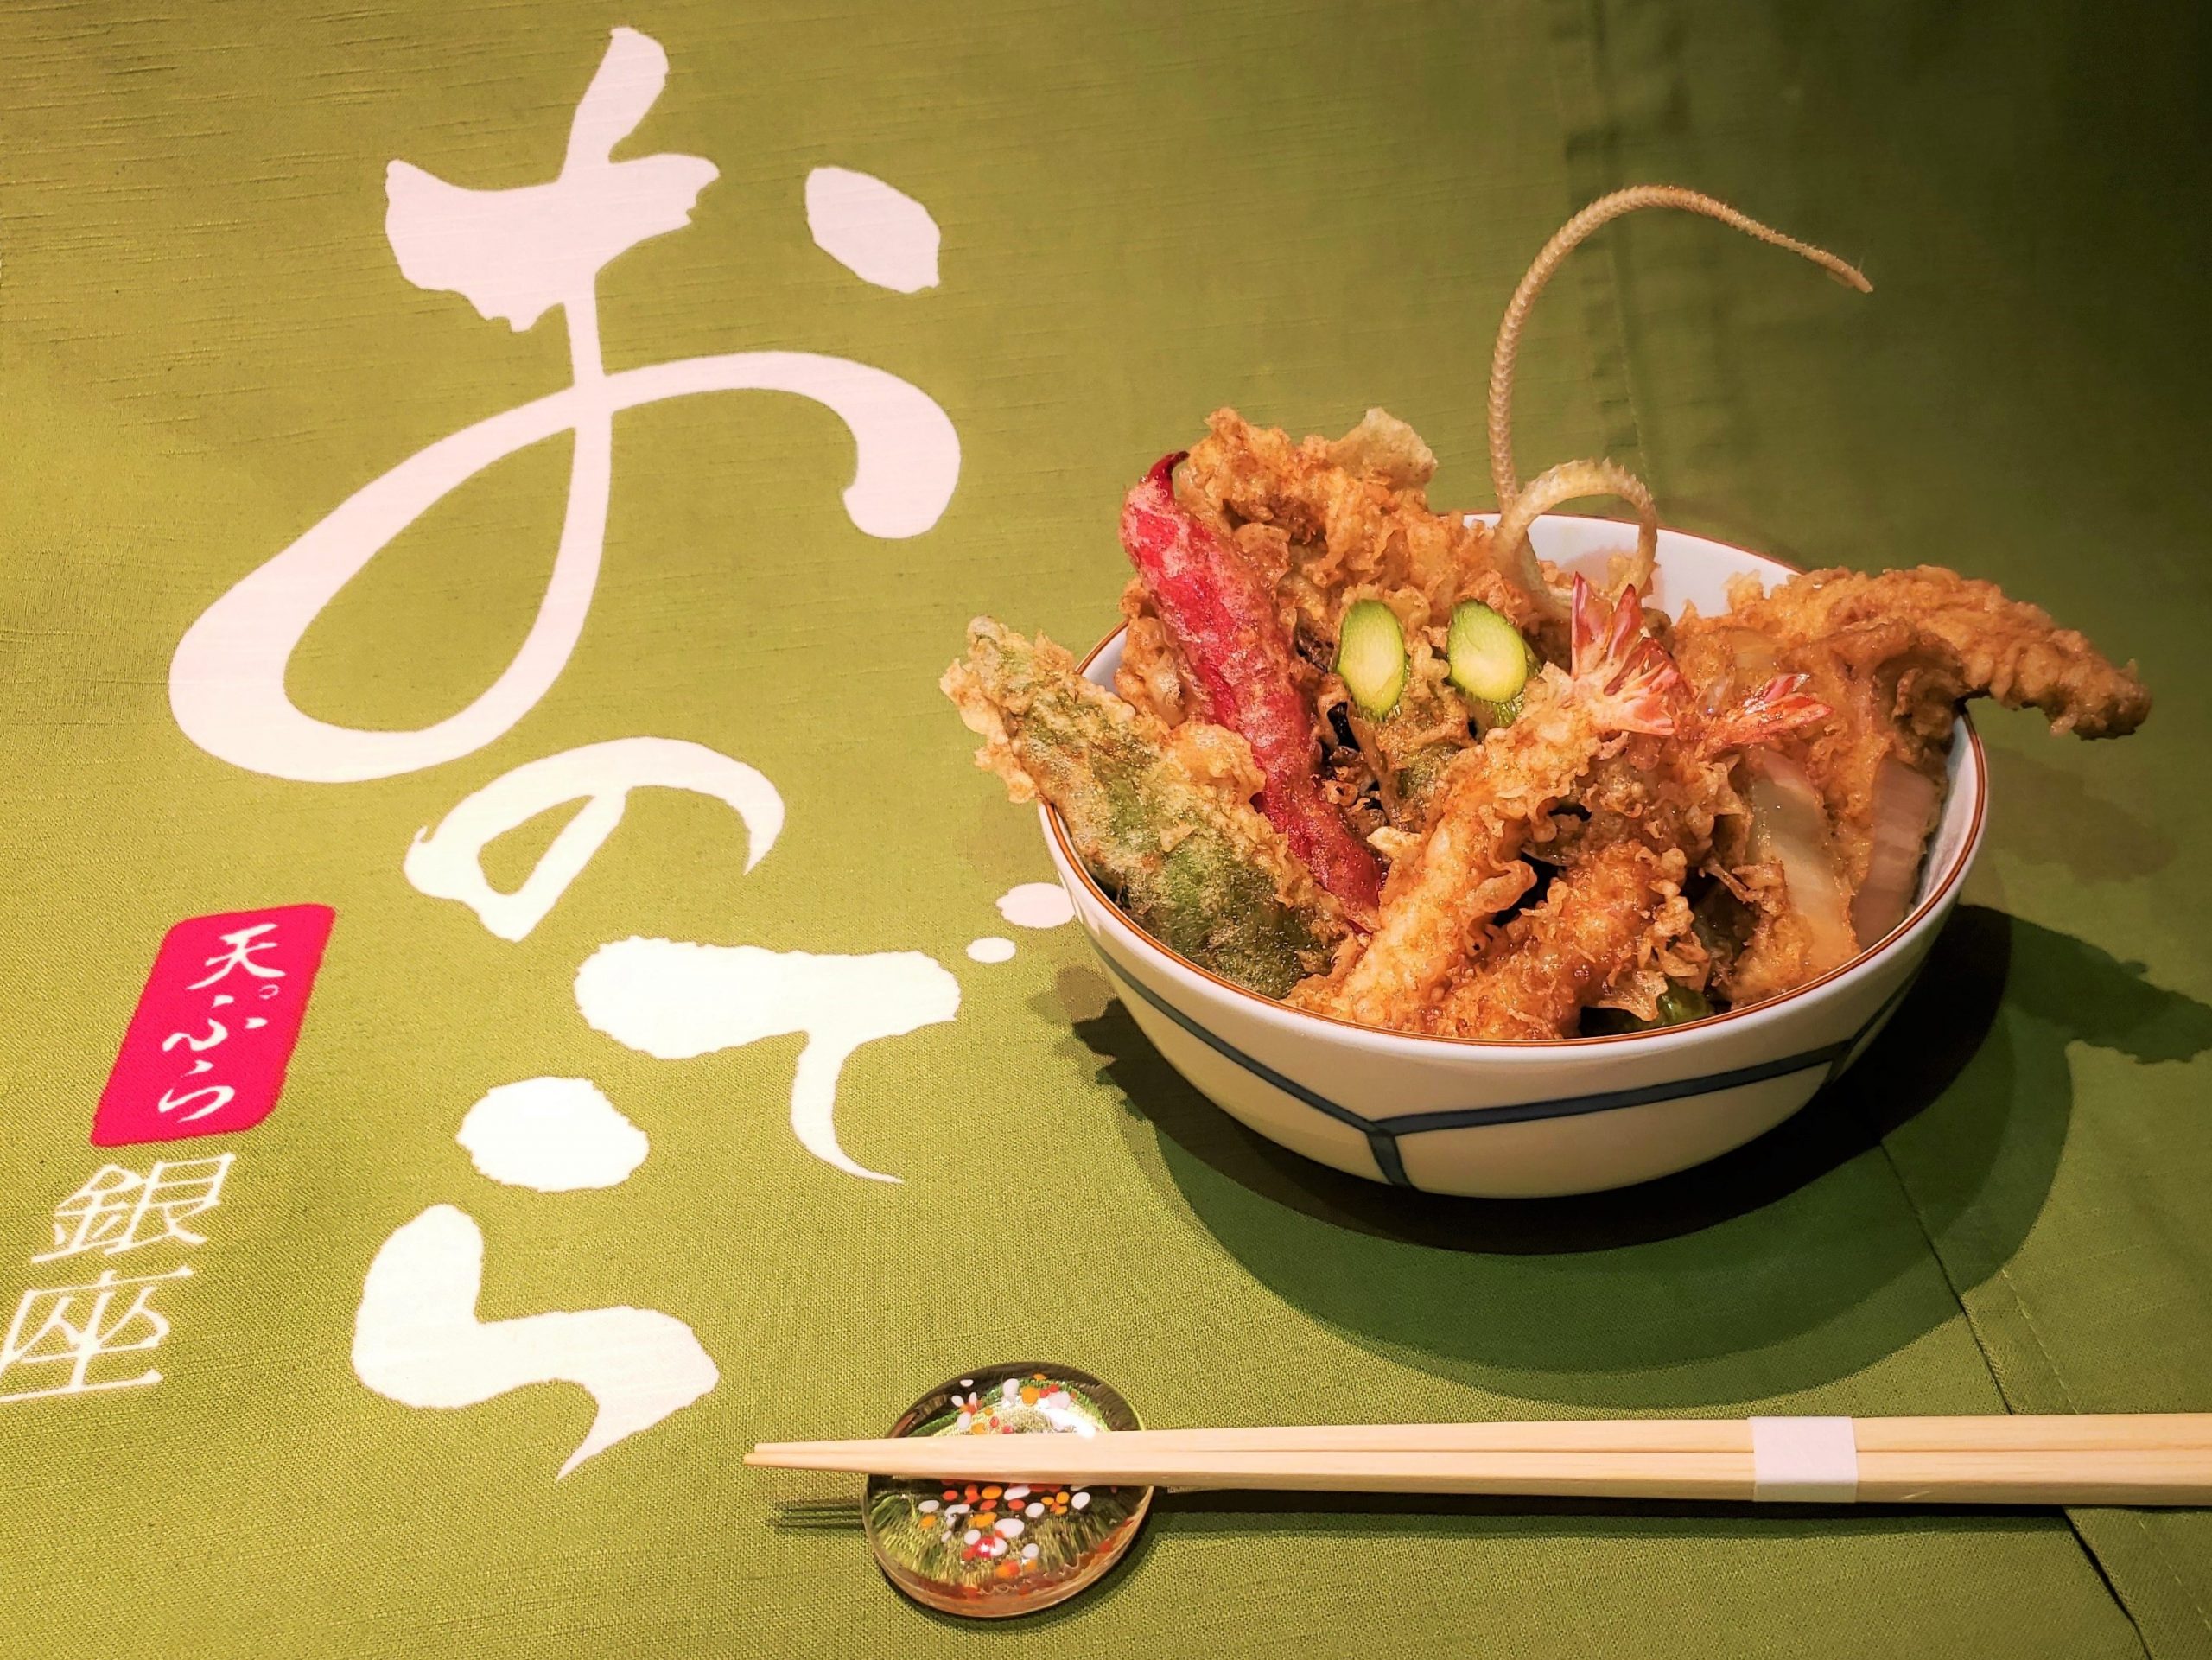 【Press Release】「天ぷら 銀座おのでら 並木通り店」、「あなたの天丼」ランチ開始！